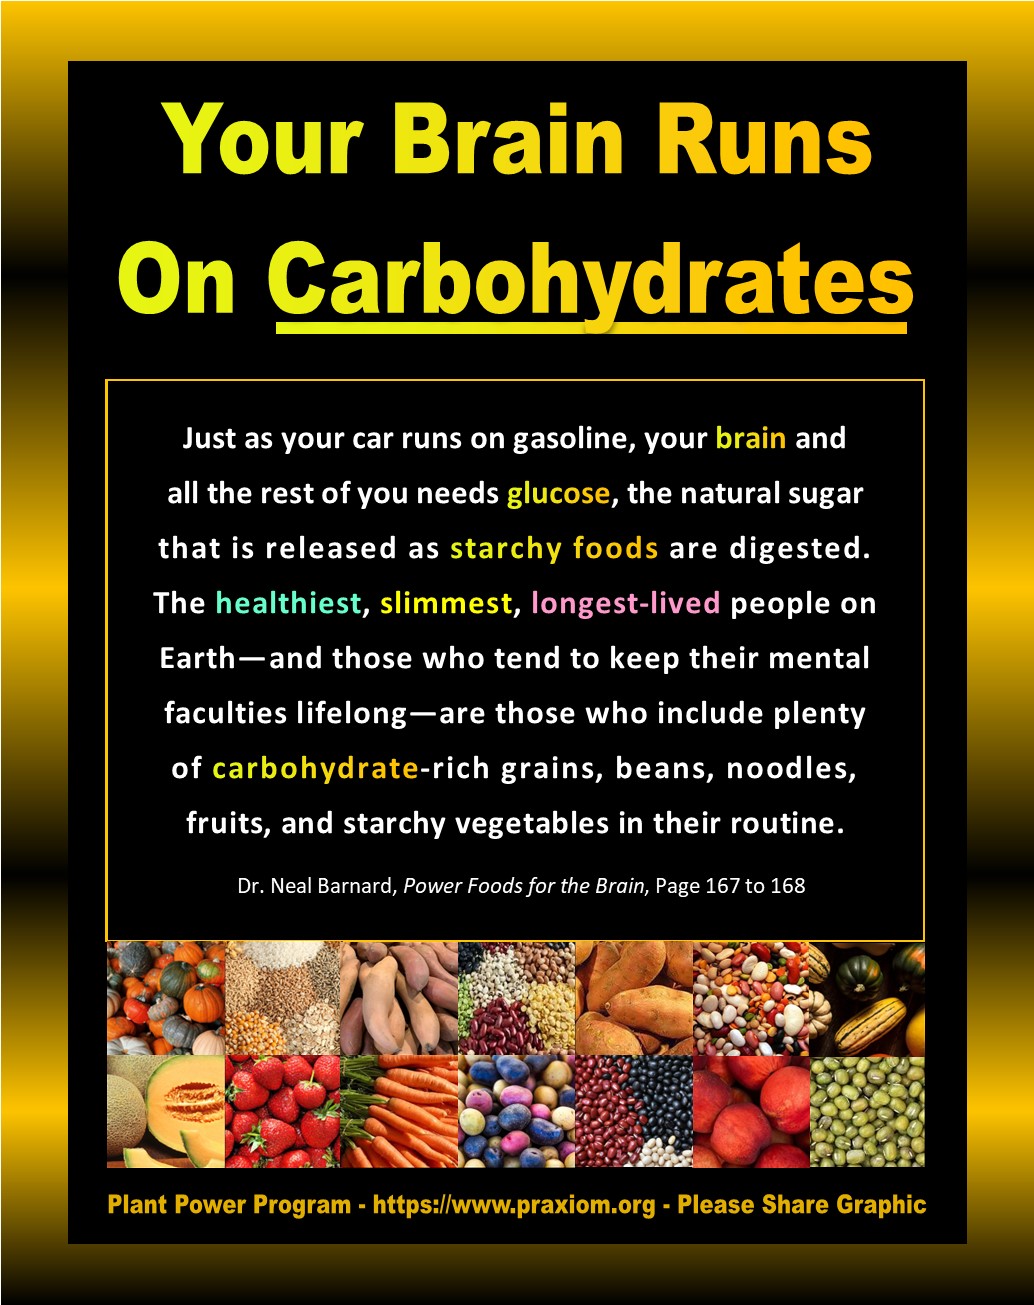 Your Brain Runs on Carbs - Dr. Neal Barnard